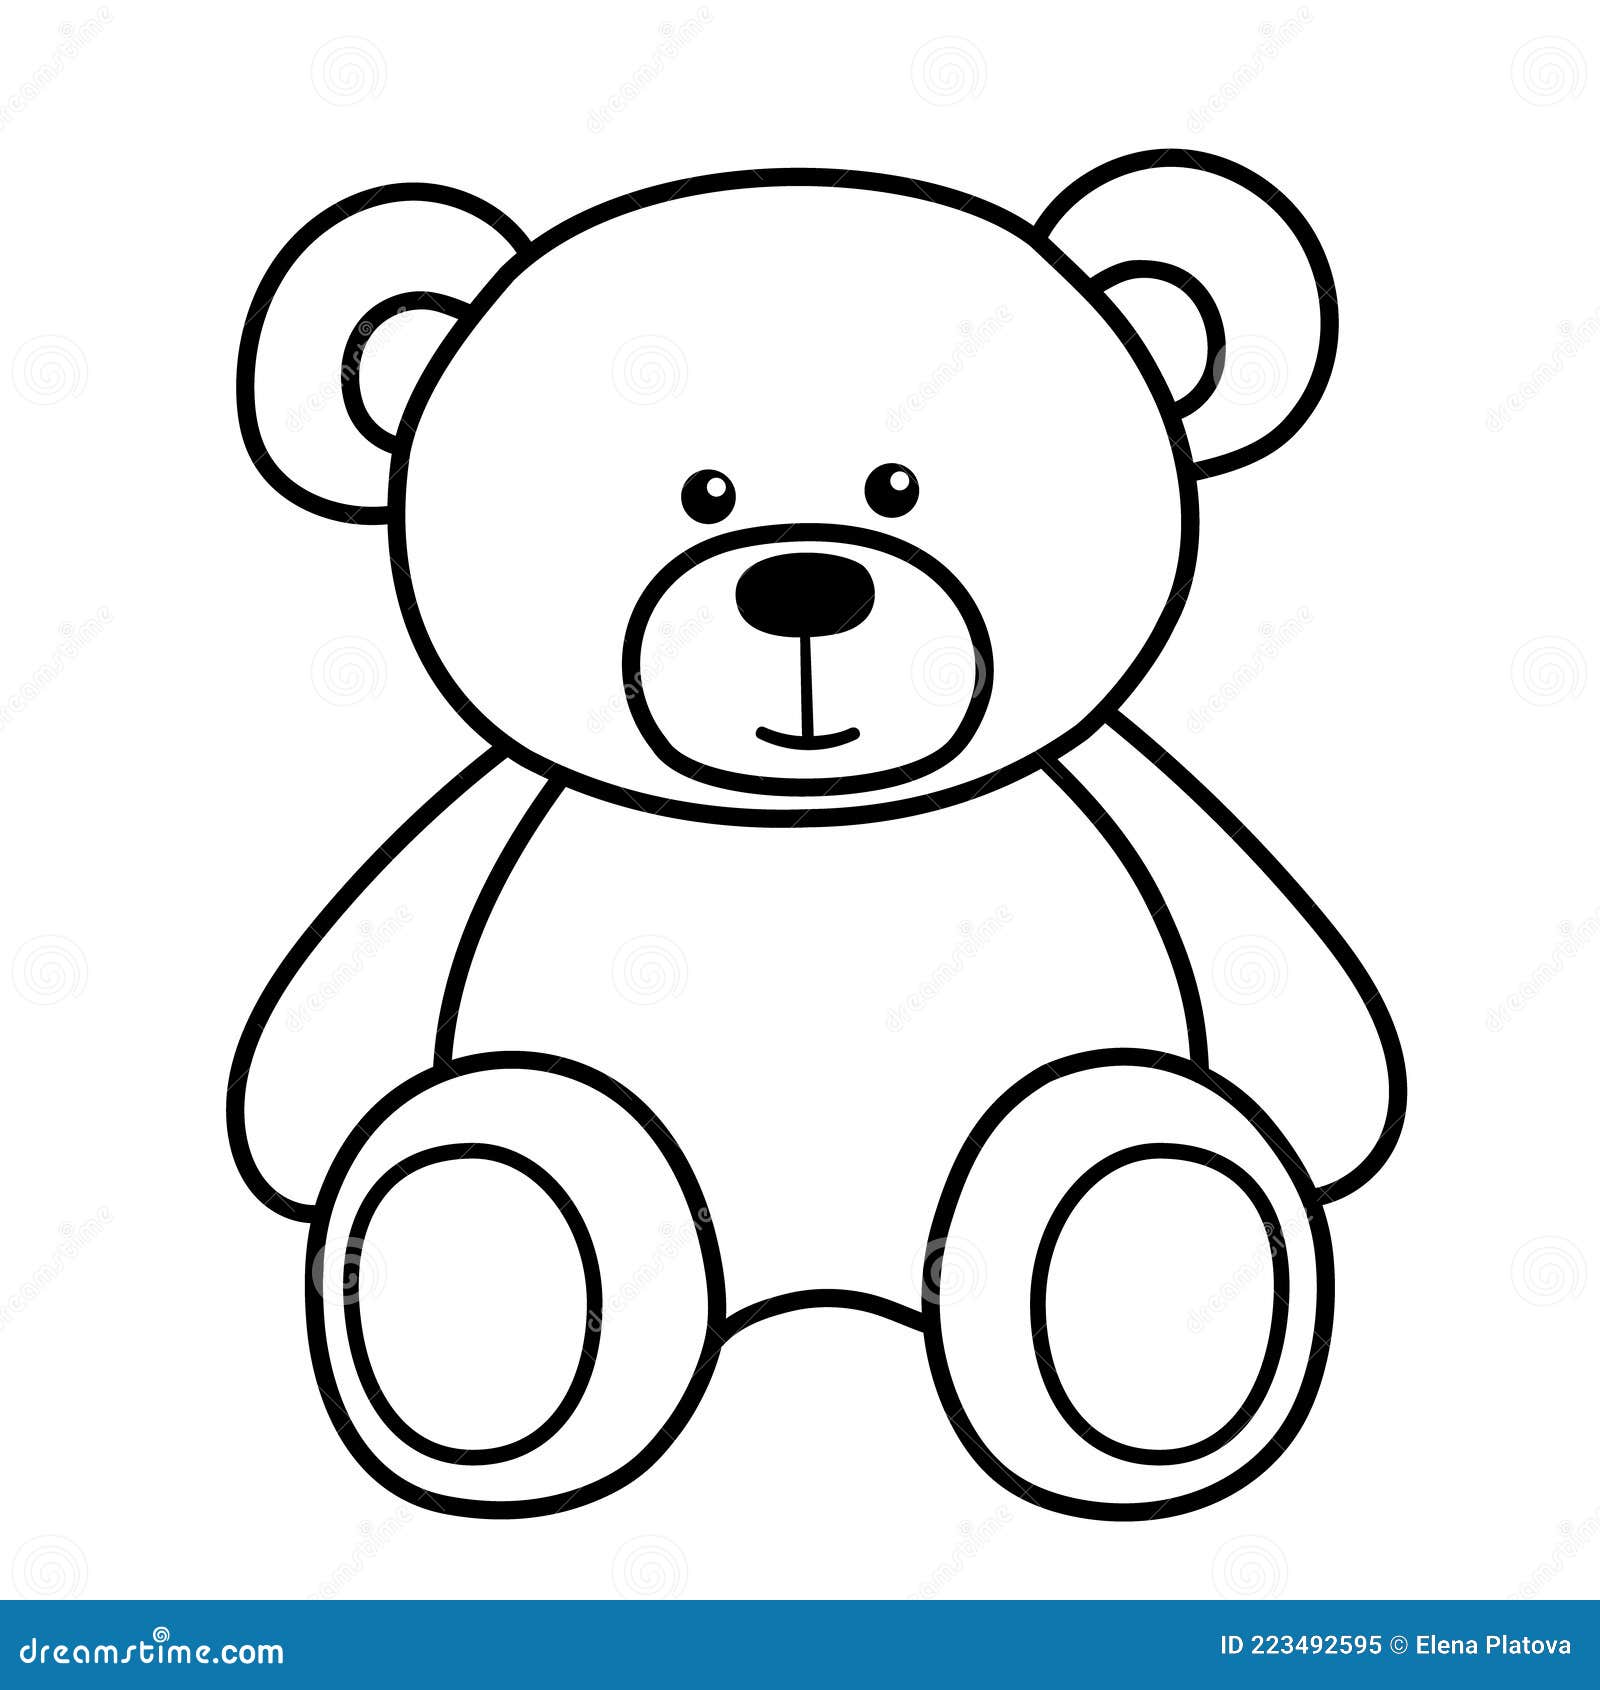 15 Best Teddy bear drawing easy ideas  teddy bear drawing bear drawing teddy  bear drawing easy